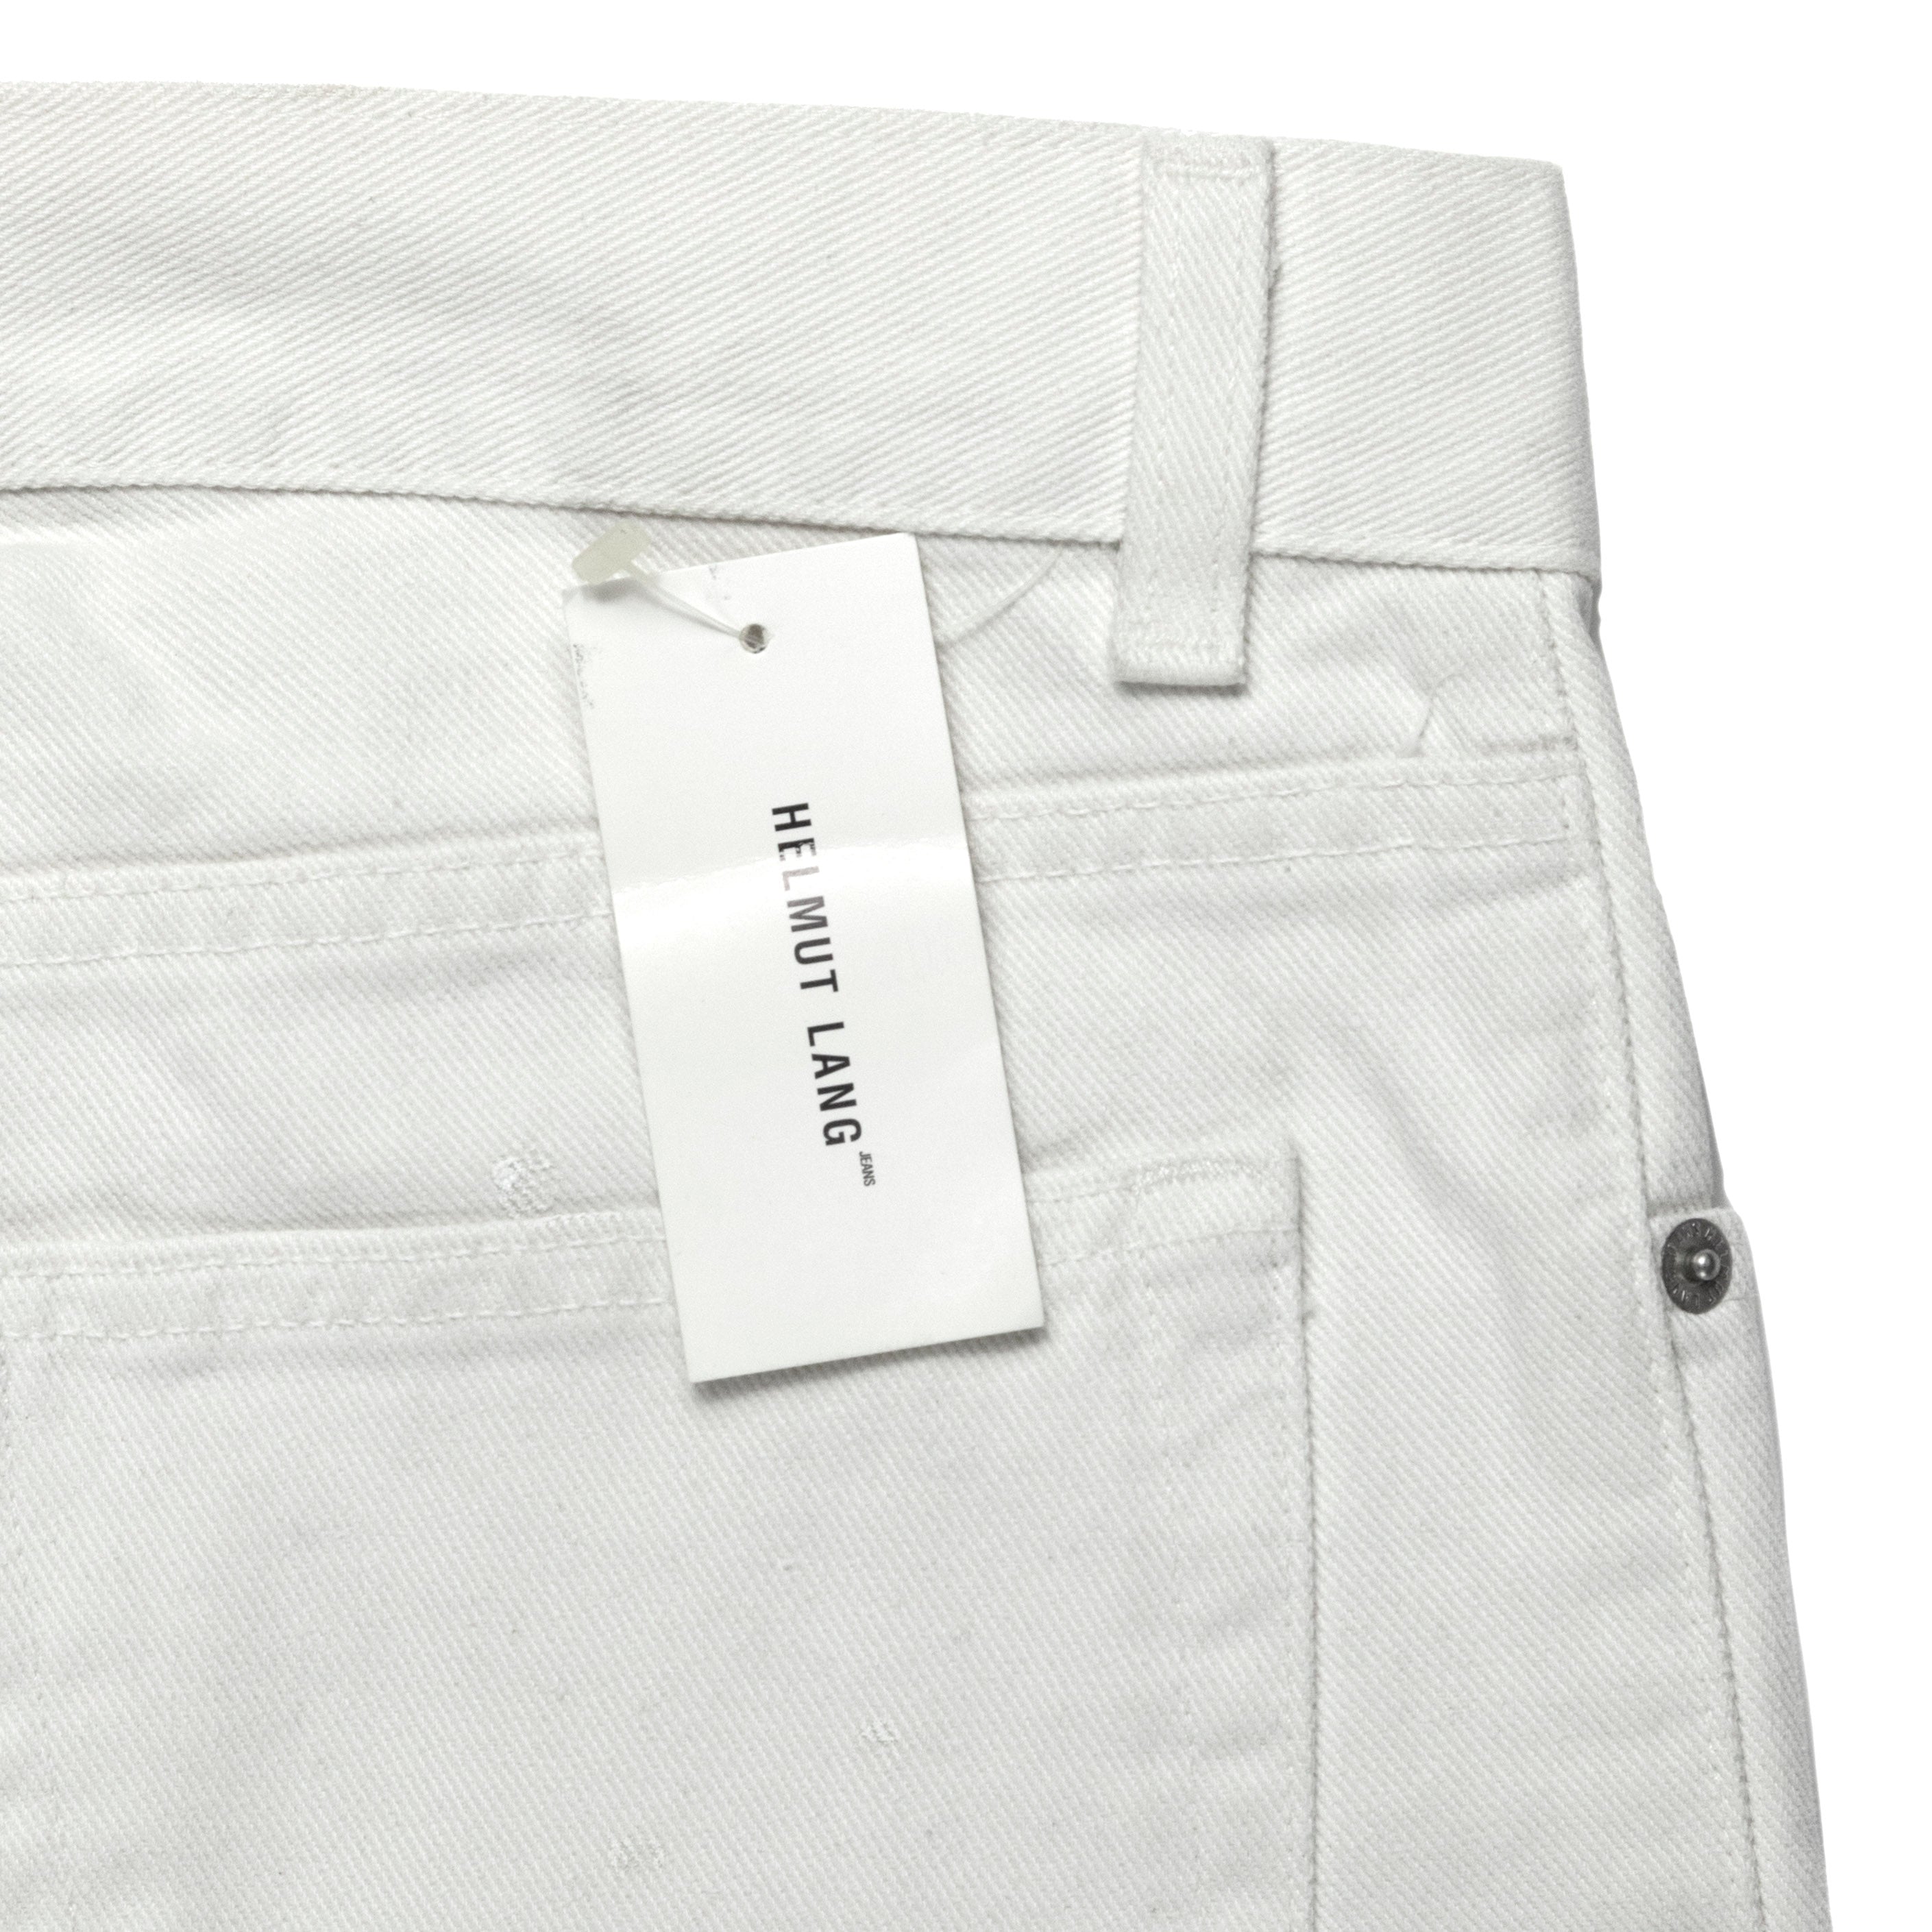 Helmut Lang White Painter Jeans - 1999 - SILVER LEAGUE